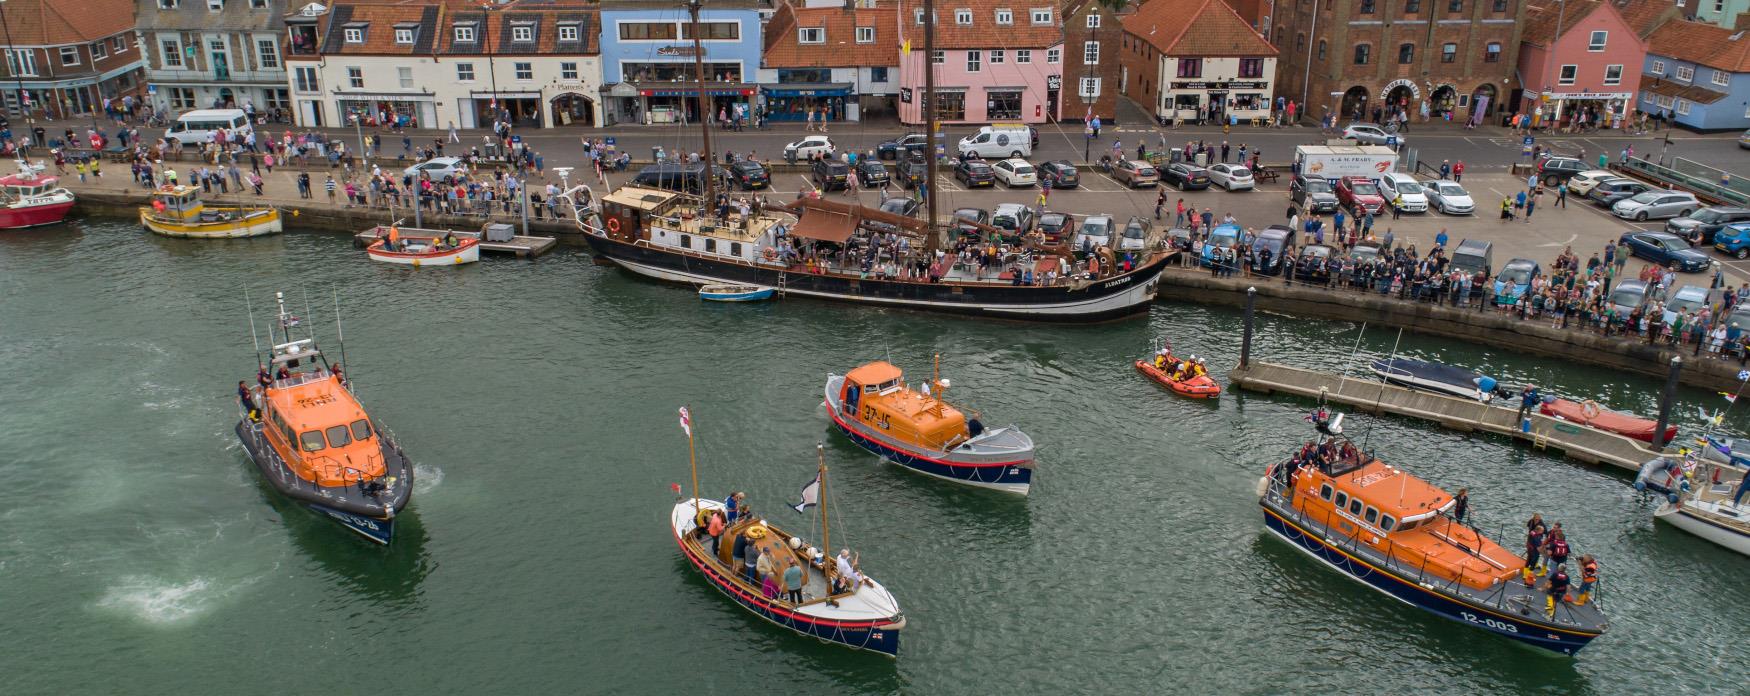 Wells Lifeboats